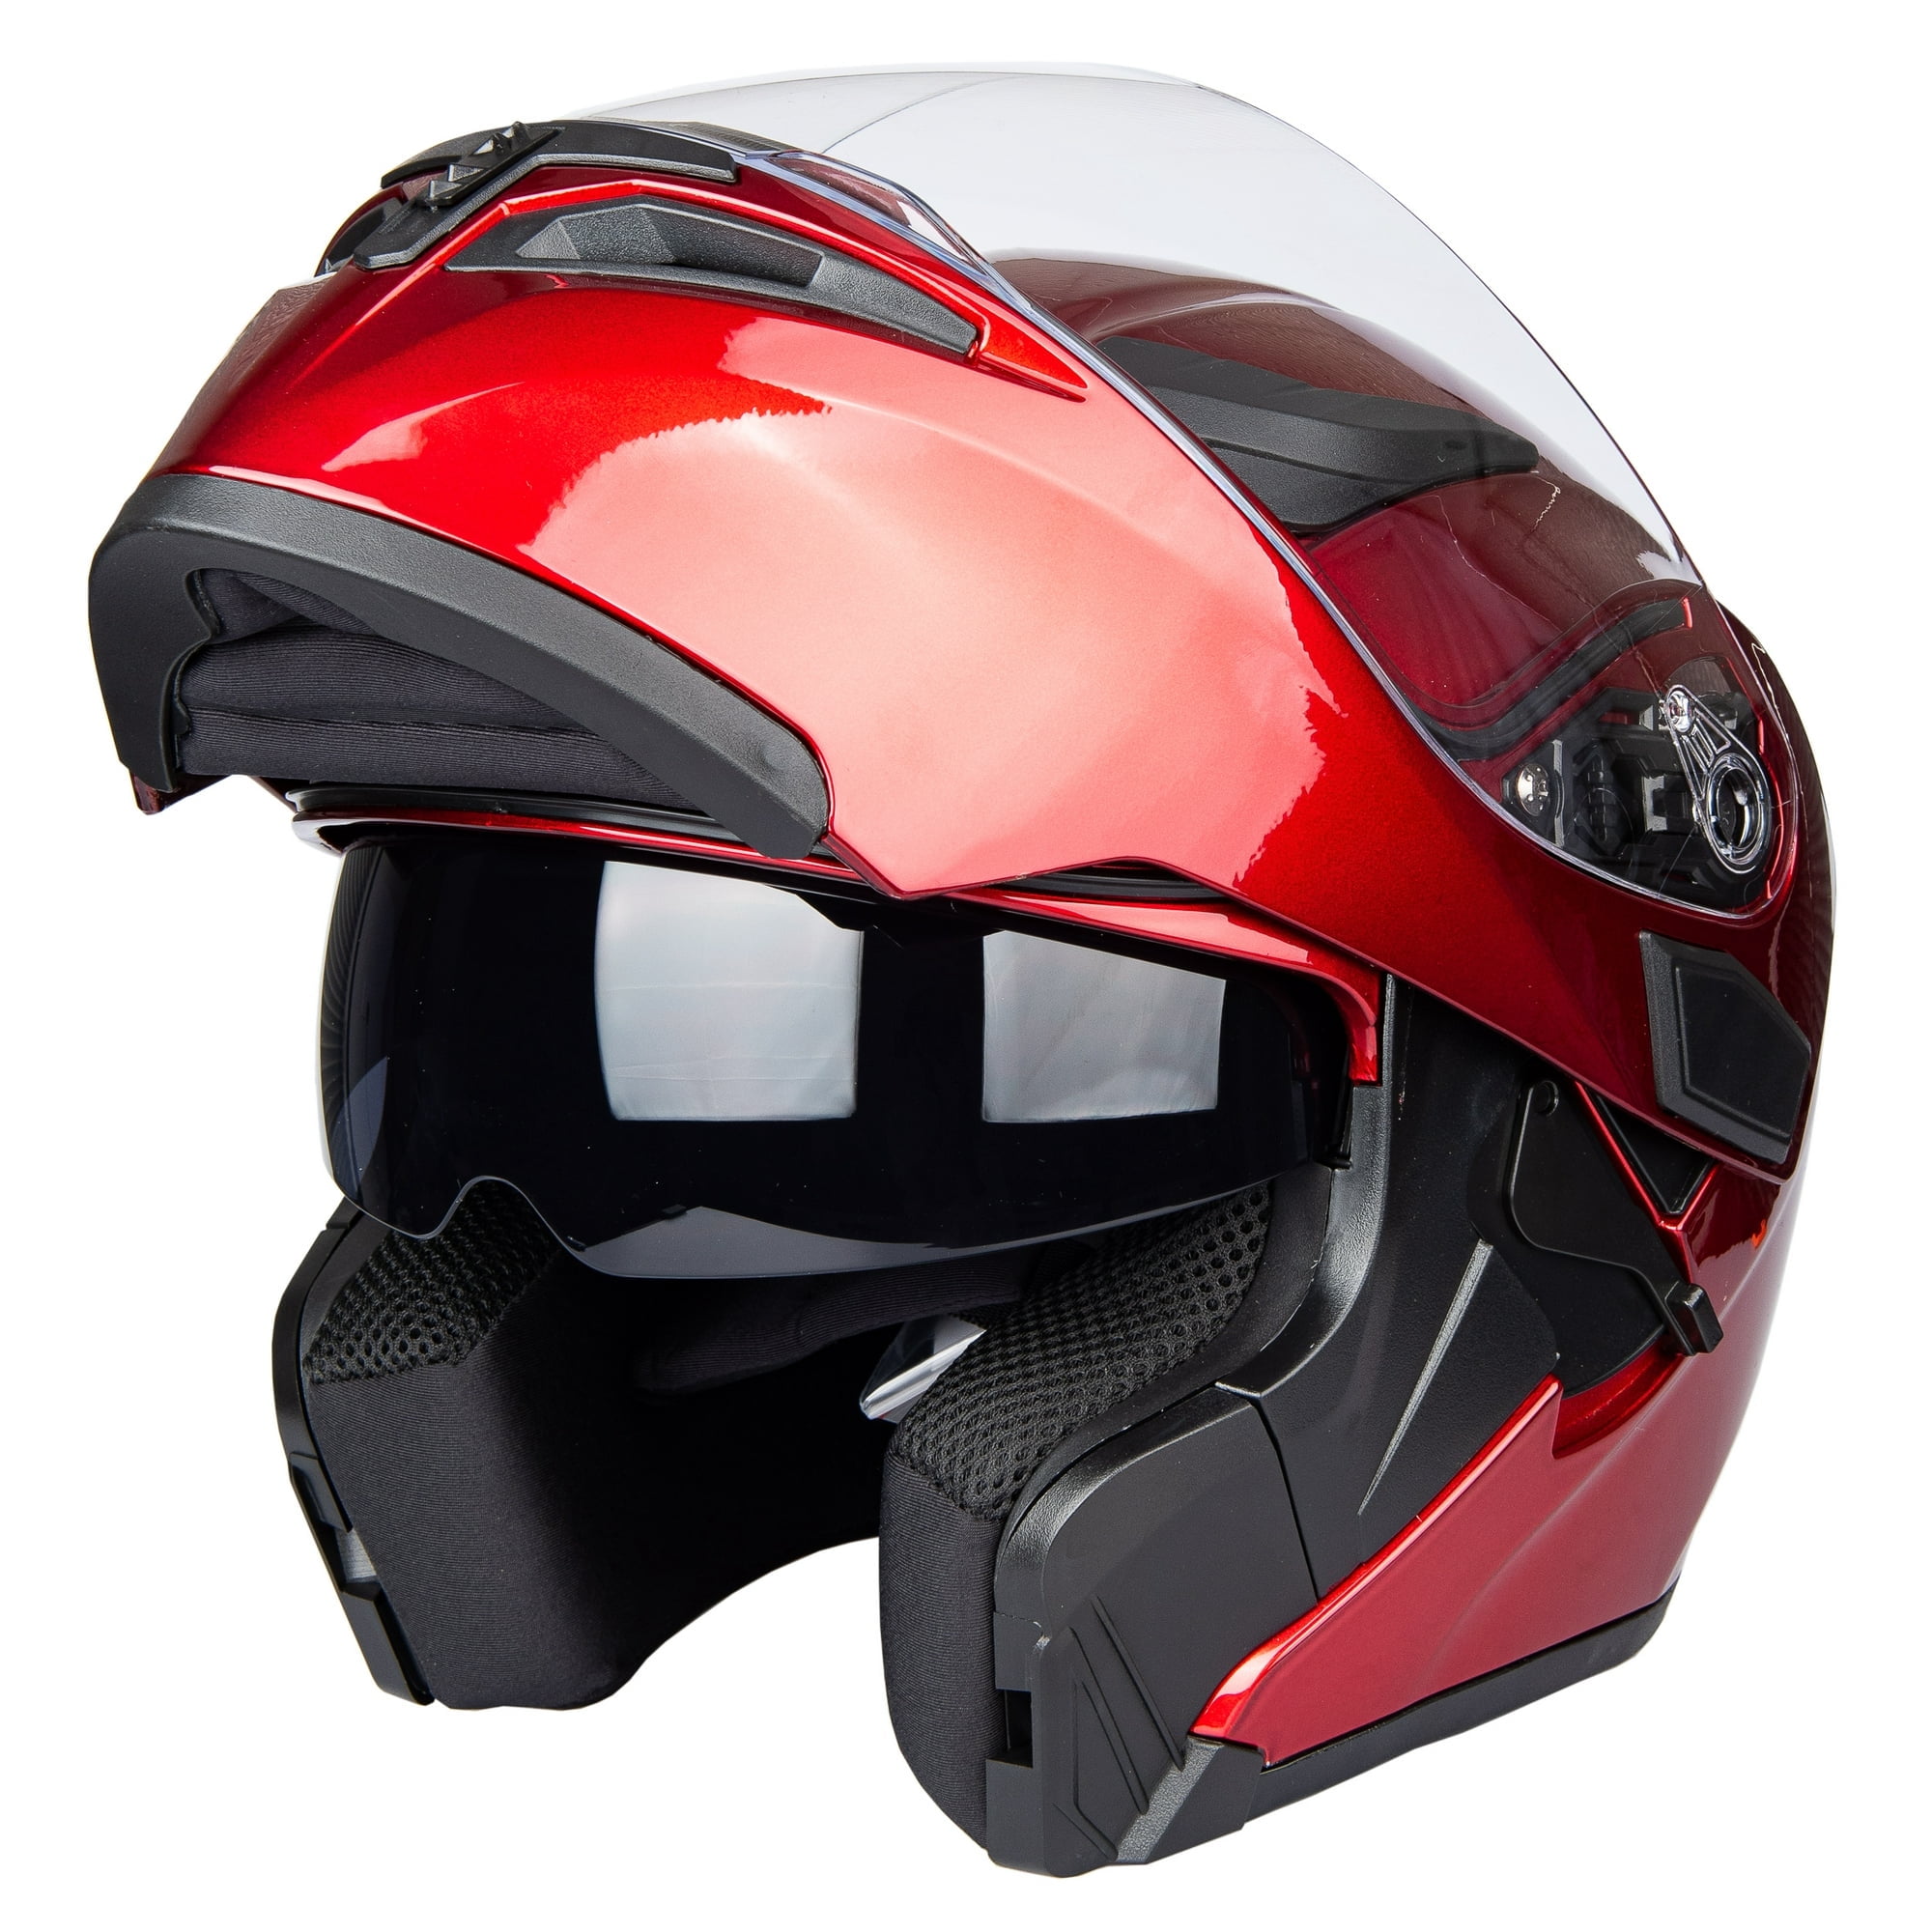 GMAX MD04 Modular Street Helmet Wine Red Lg G104106 - Walmart.com